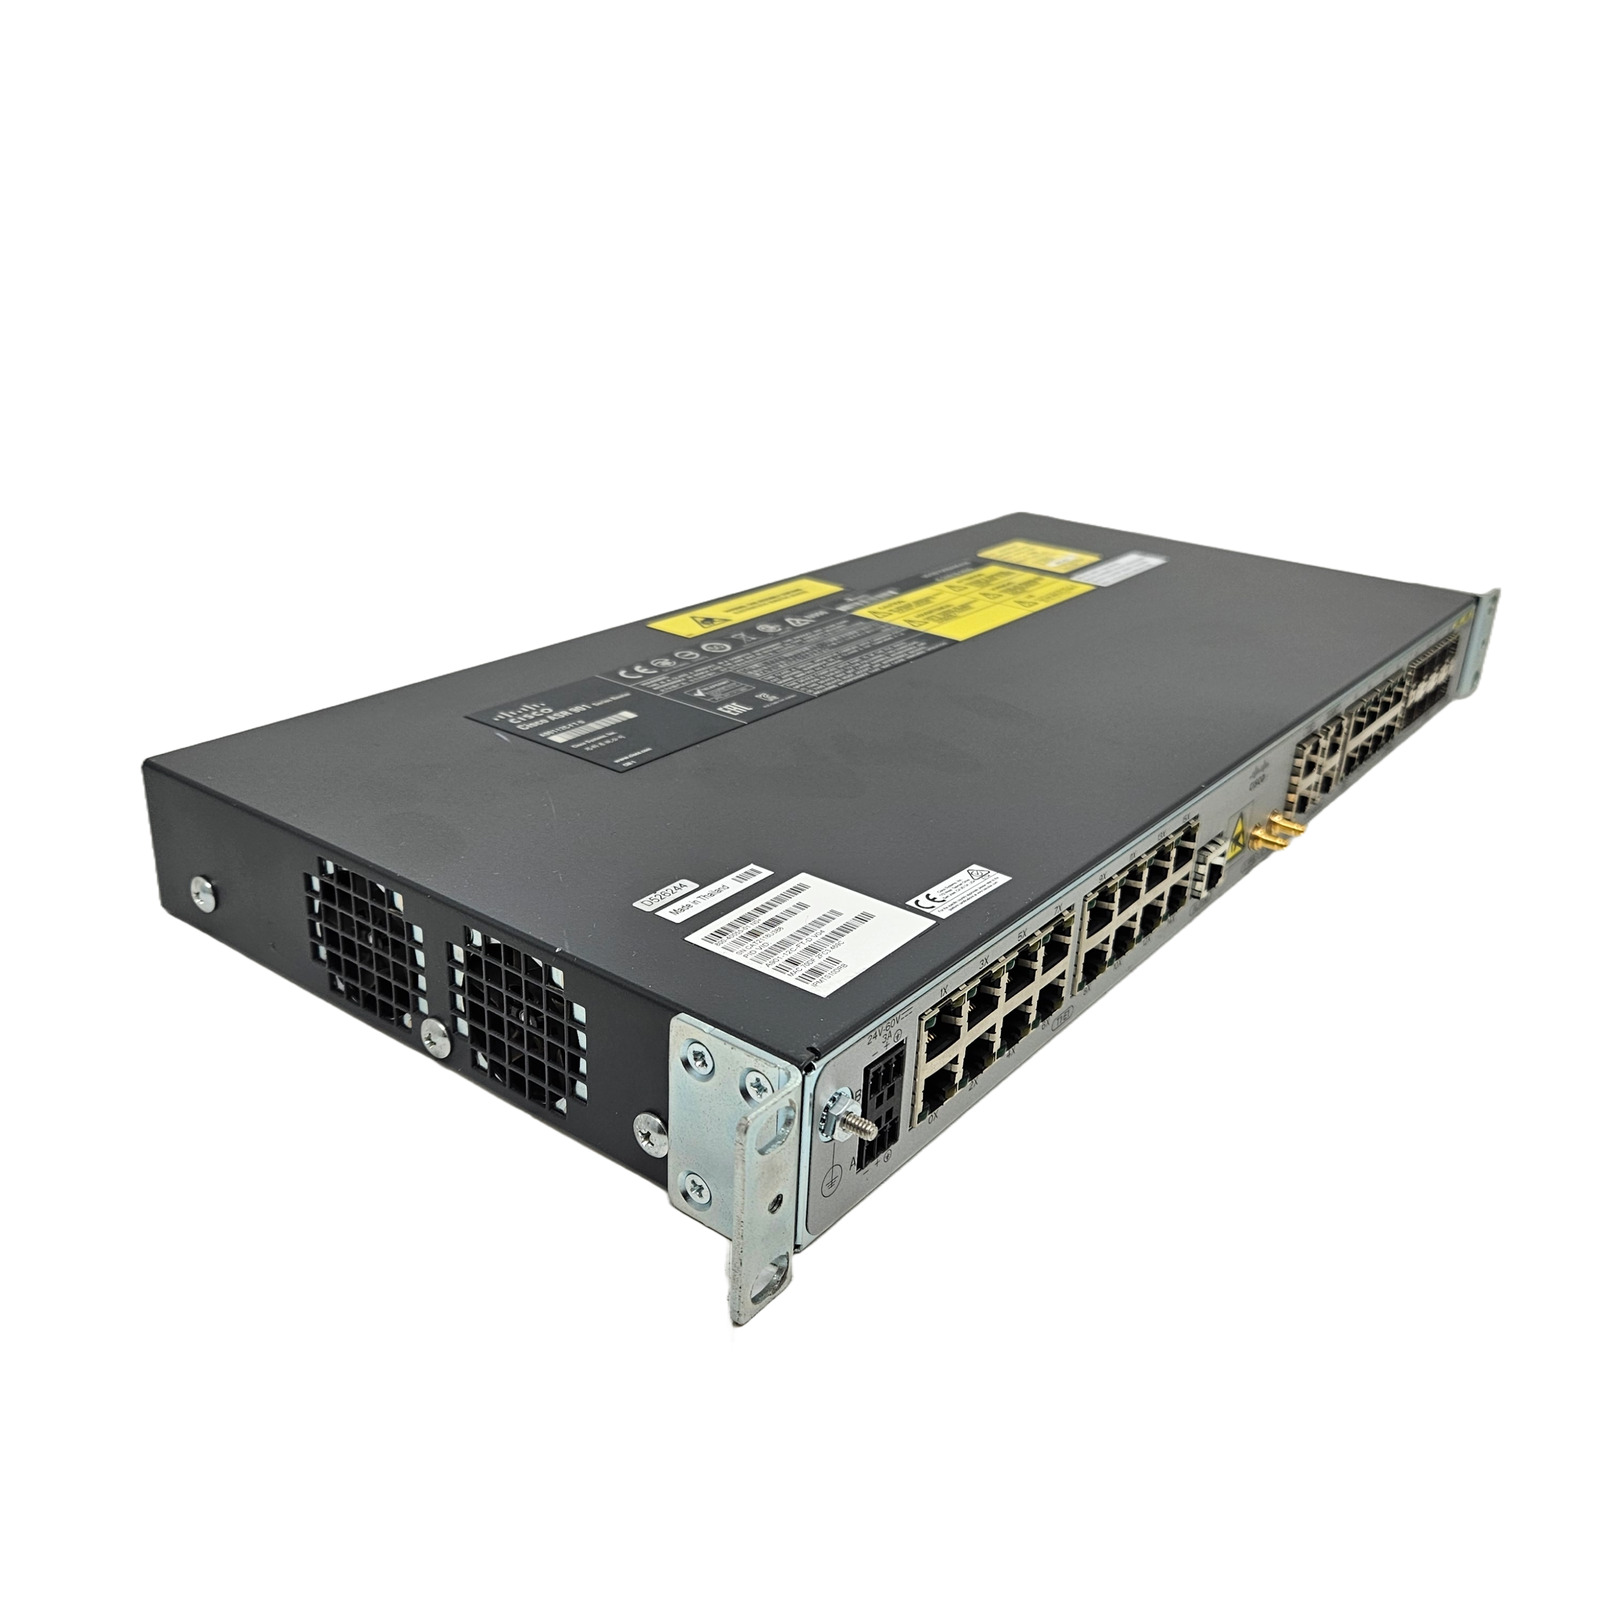 Cisco ASR 901 Aggregation Services Router A901-12C-FT-D